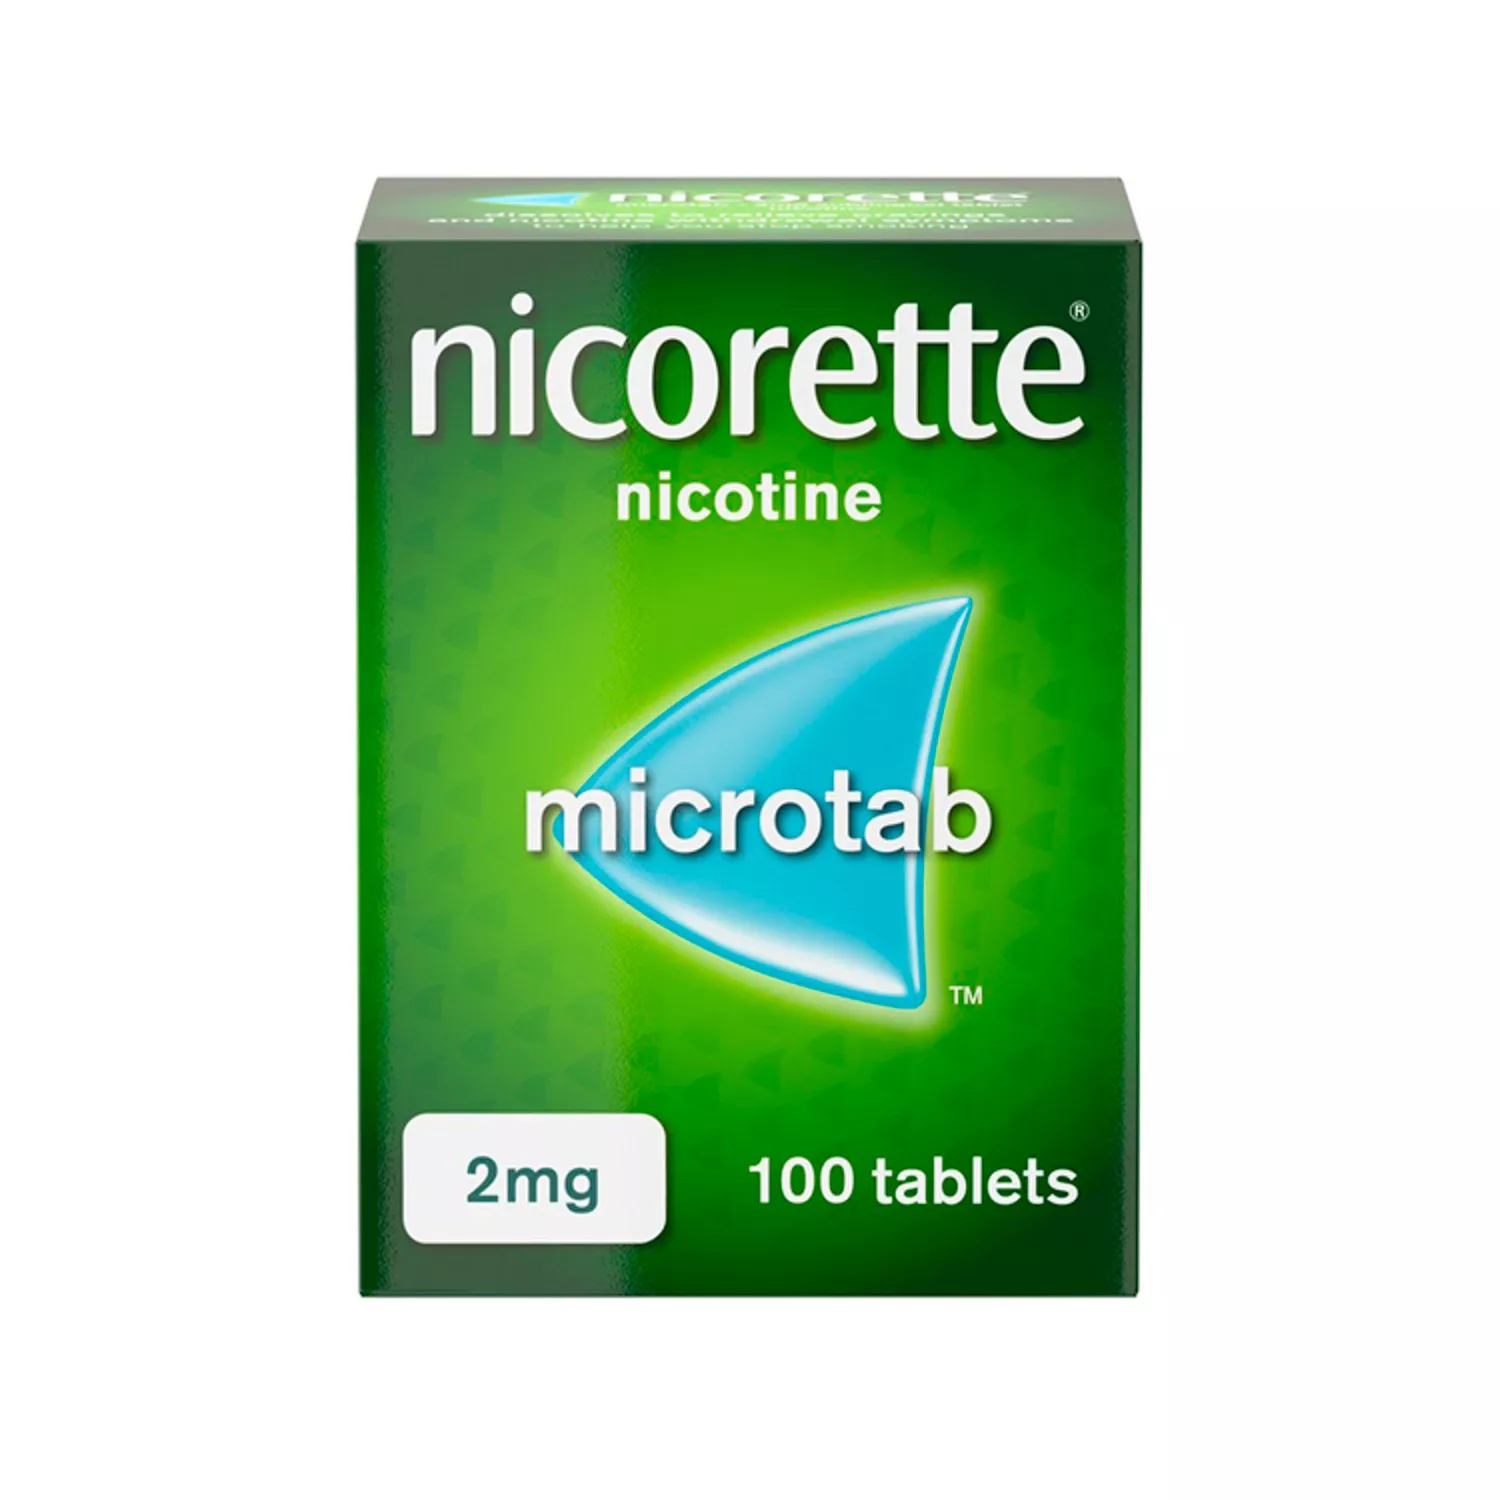 nicorette microtab